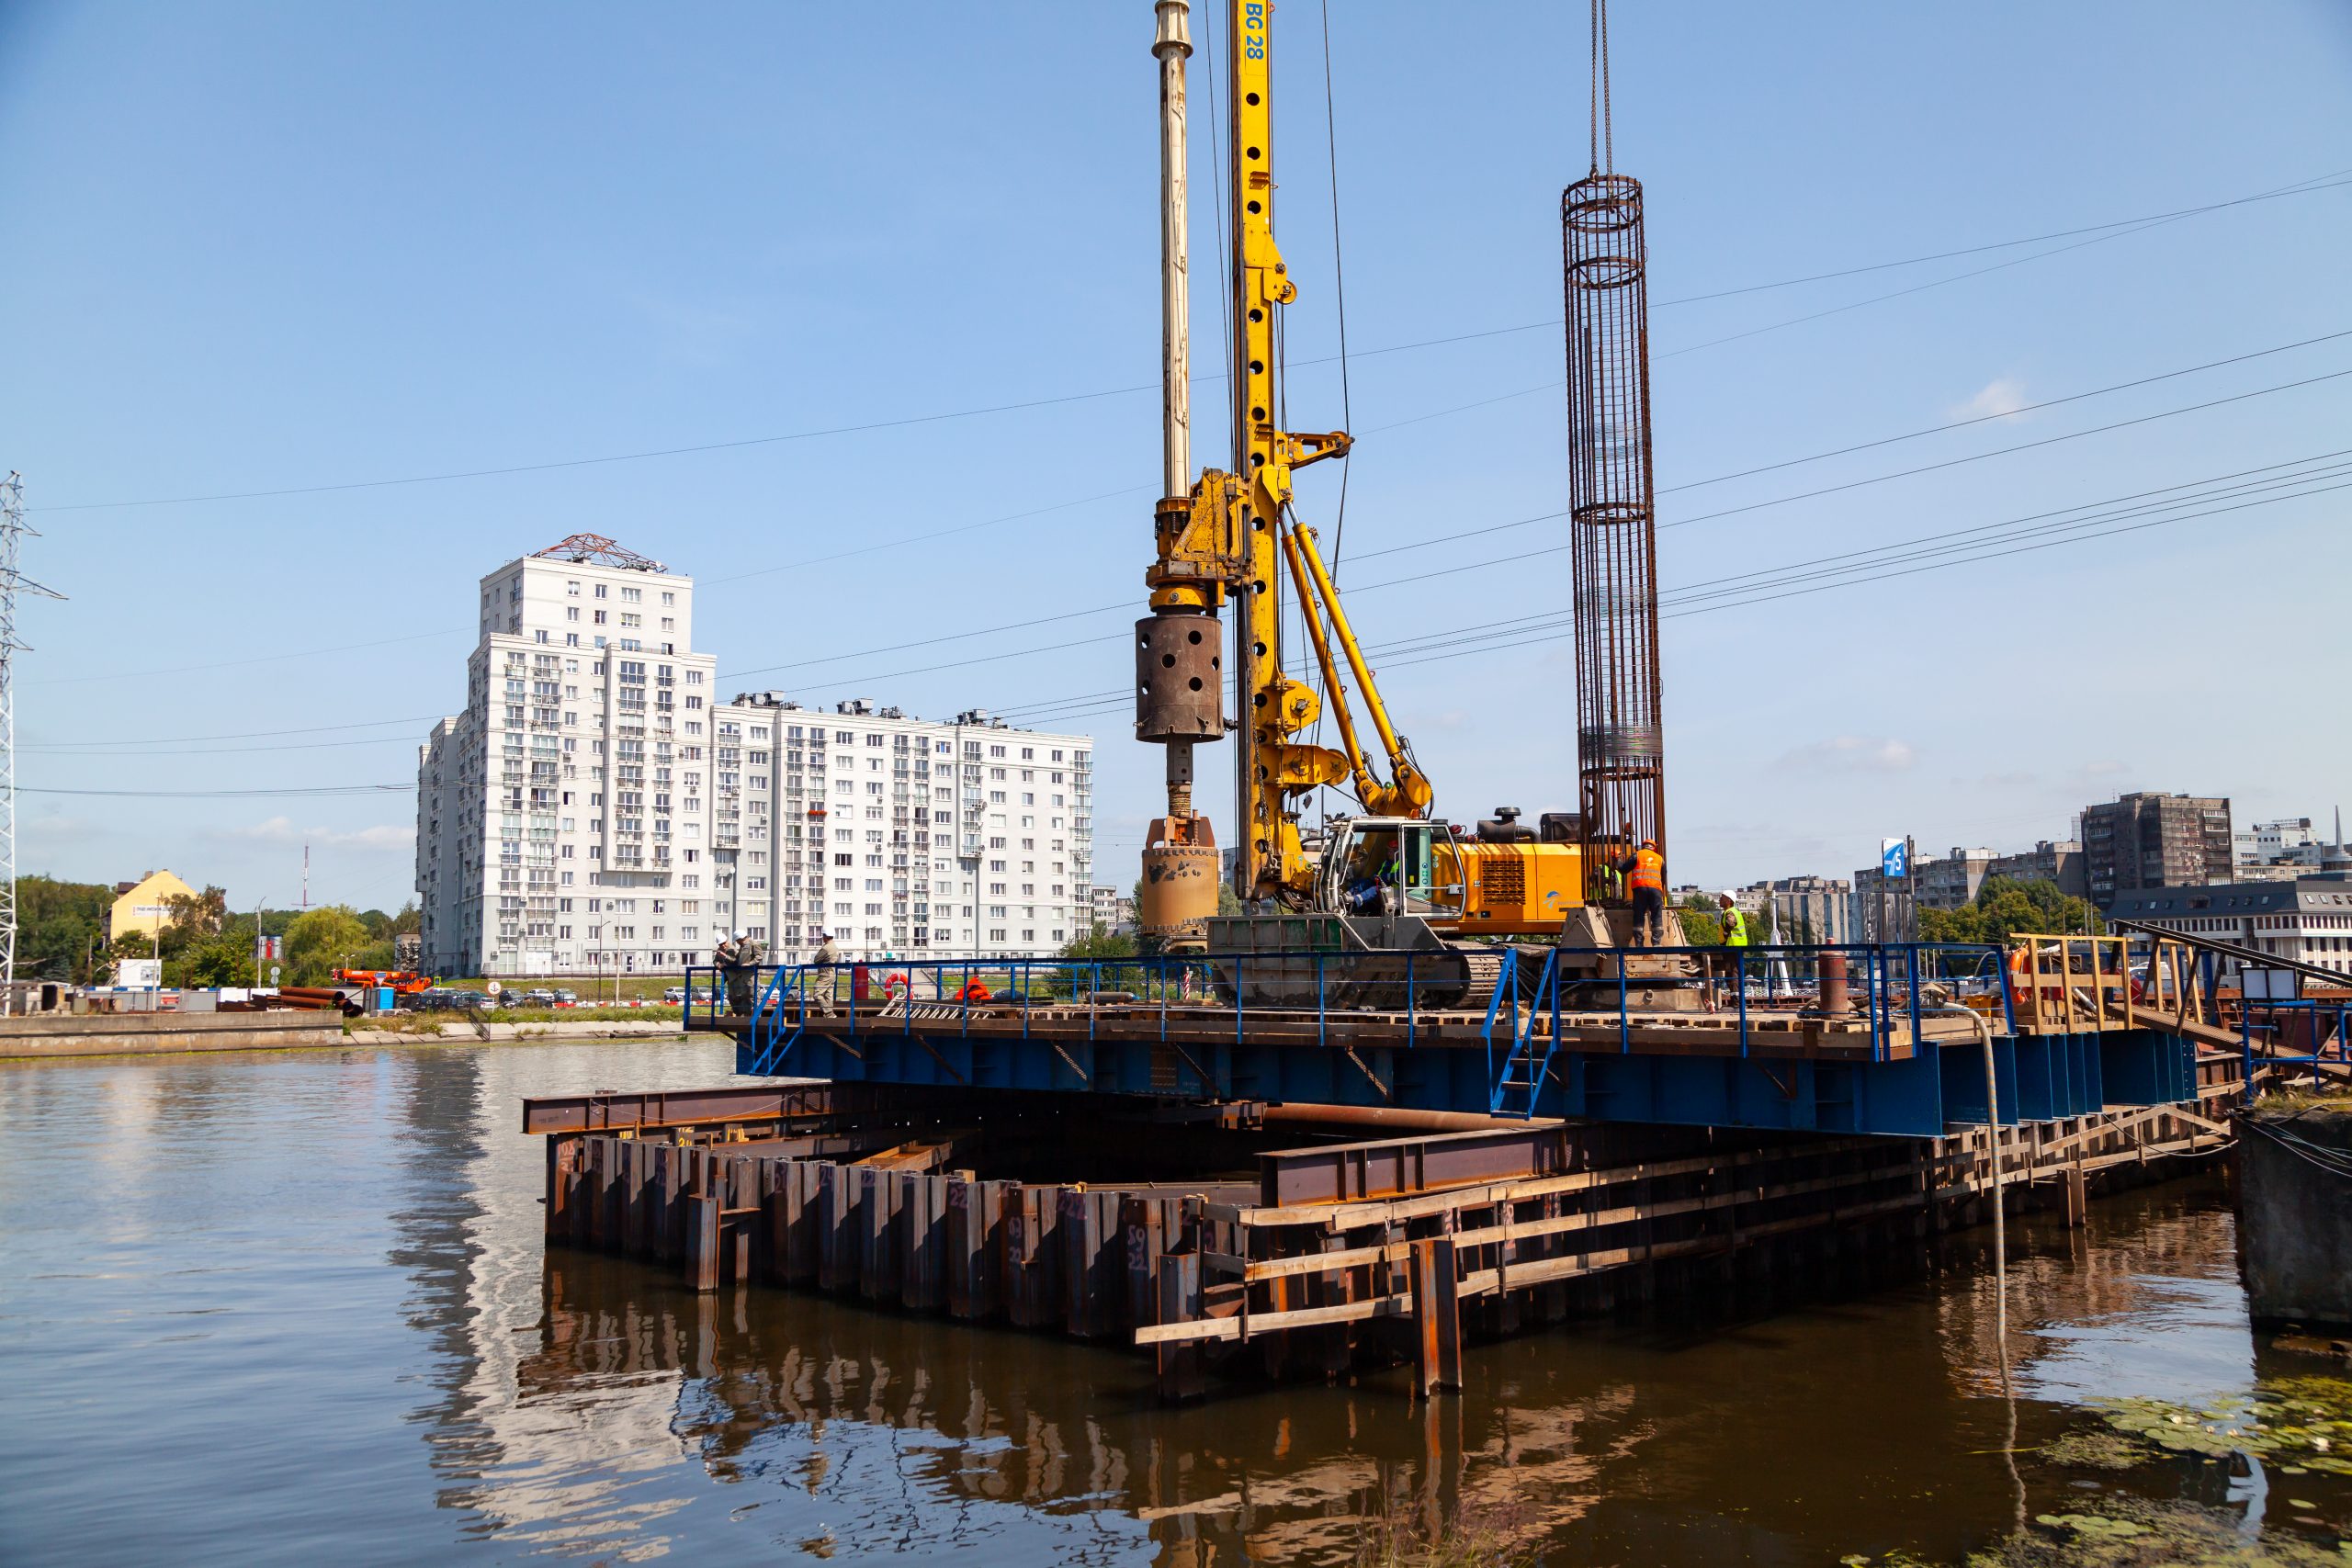 Специалисты ГК Бамтоннельстрой-Мост приступили к русловым работам на авто- и железнодорожном мостах через Преголю в Калининграде